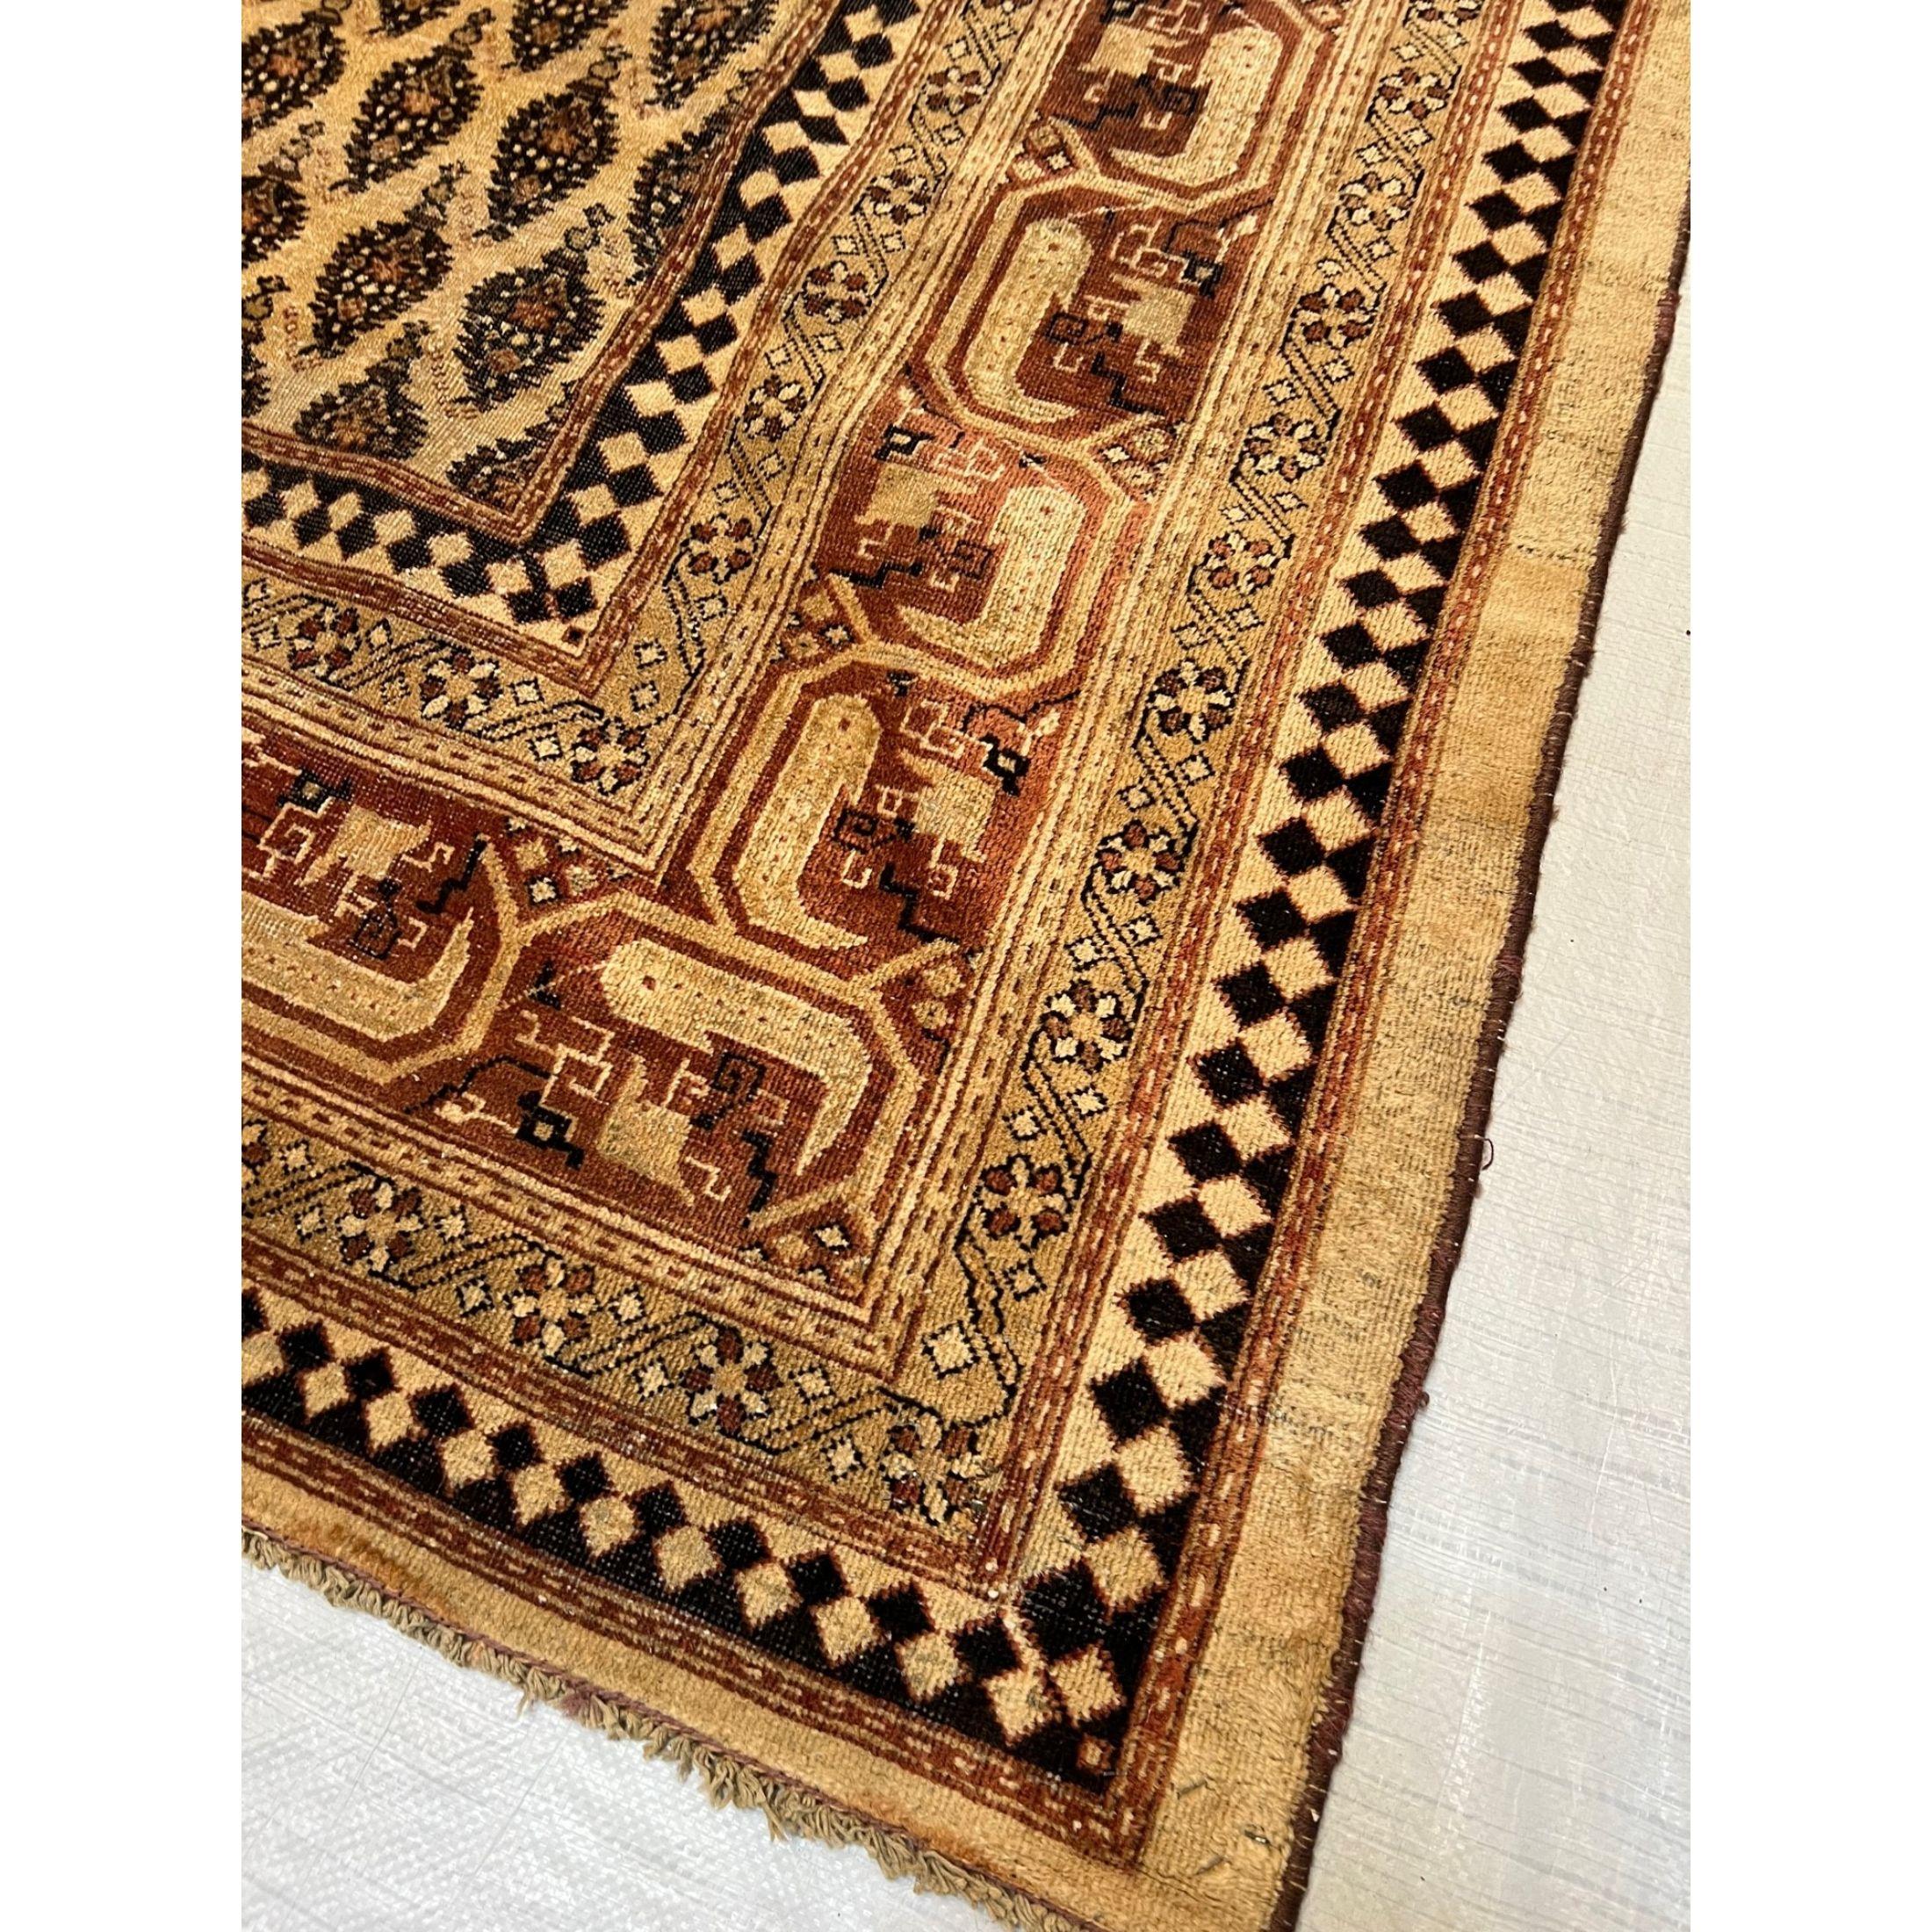 Tapis anciens d'Amritsar - Les tapis spectaculaires d'Amritsar reflètent le style exotique de l'Inde tout en incorporant une subtile influence coloniale. Cette convergence des styles oriental et occidental se traduit par une apparence